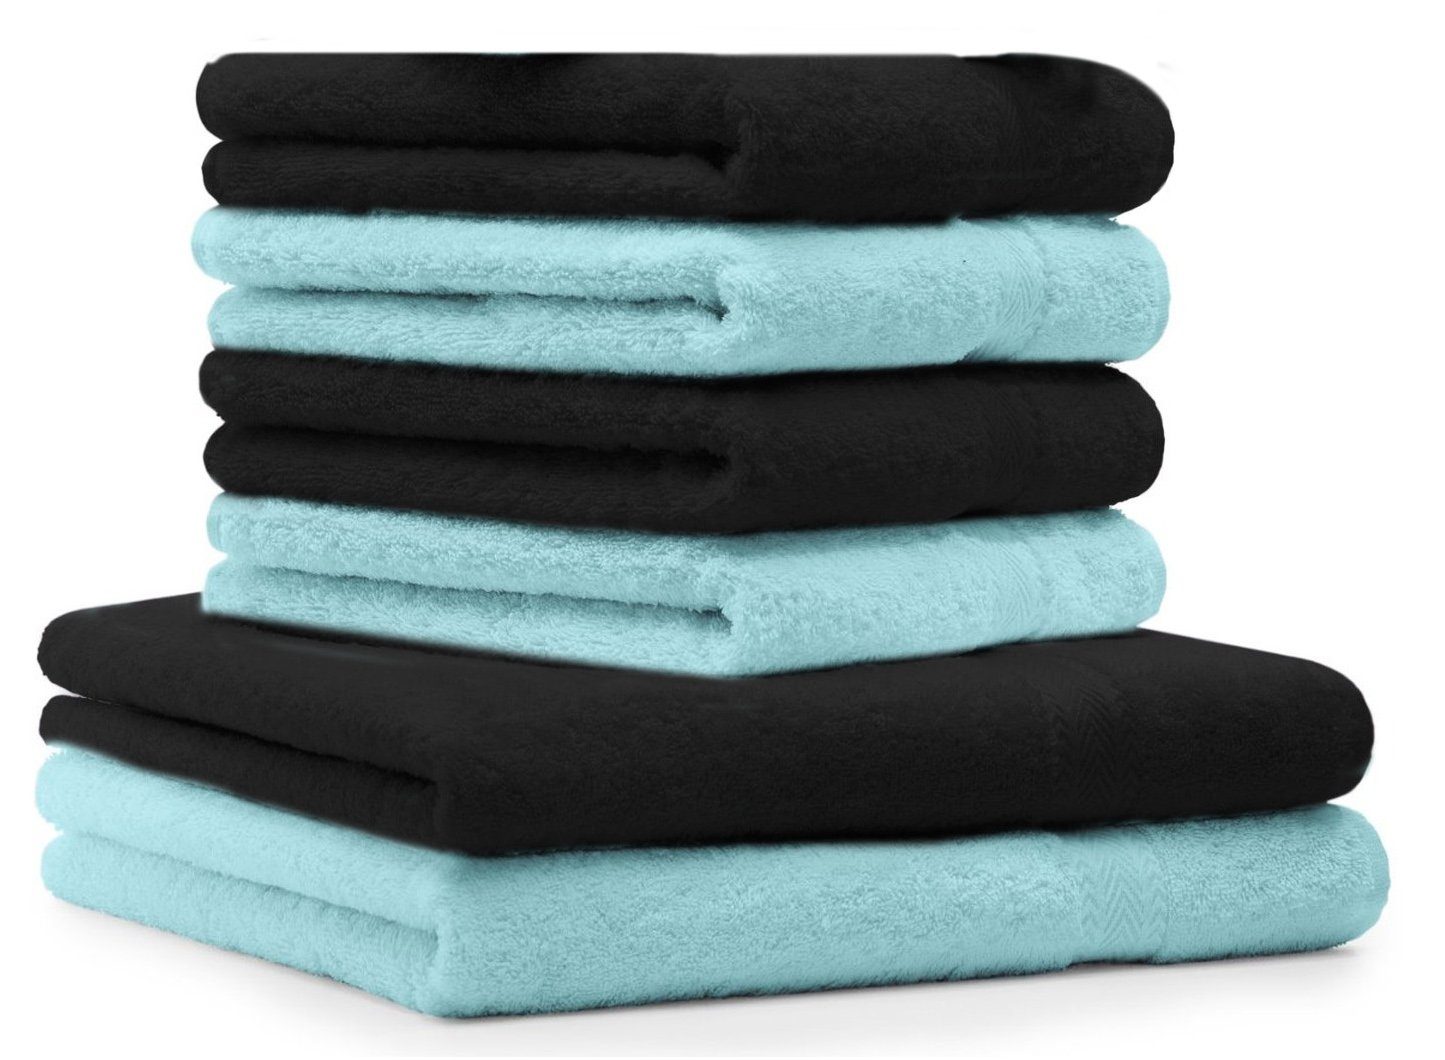 Betz Handtuch Set 6 TLG. Handtuch-Set Premium 100% Baumwolle 2 Duschtücher 4 Handtücher Farbe schwarz und türkis, 100% Baumwolle